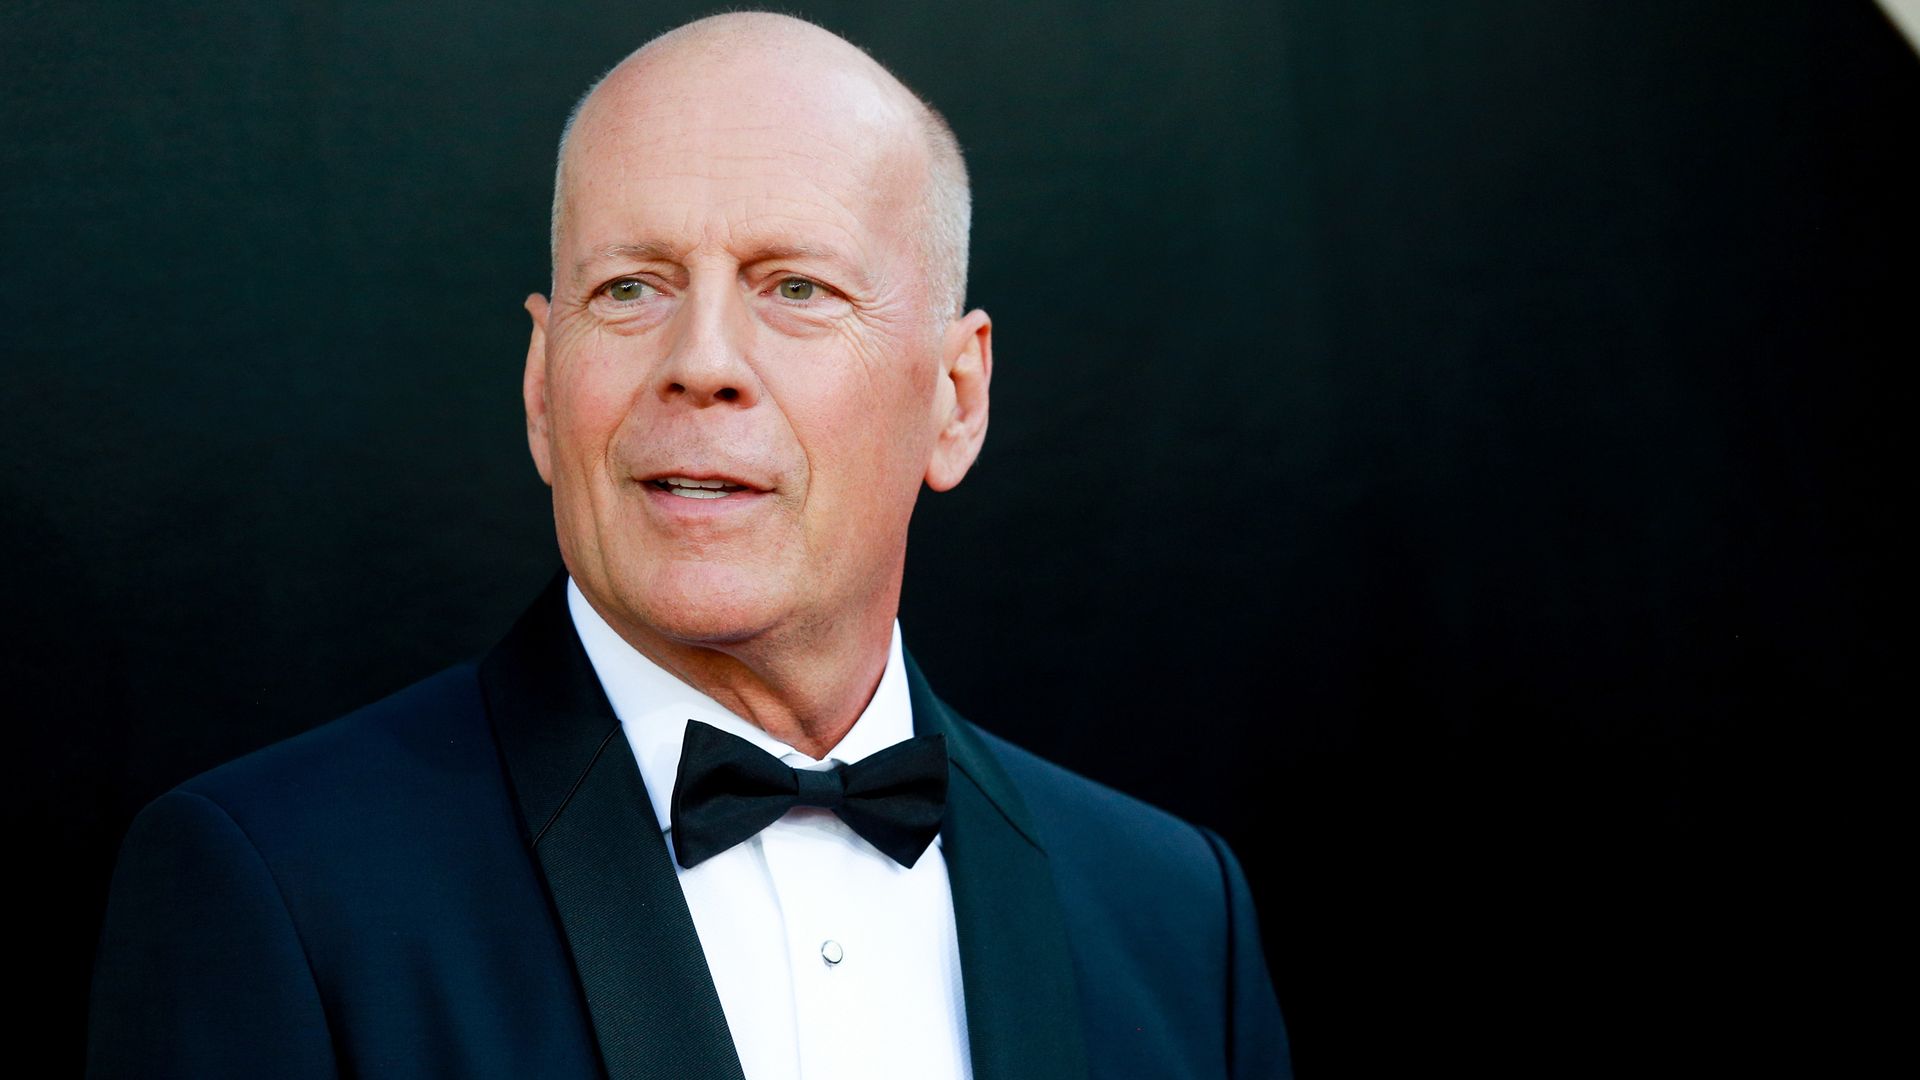 Bruce Willis' debilitating ongoing health battle explained